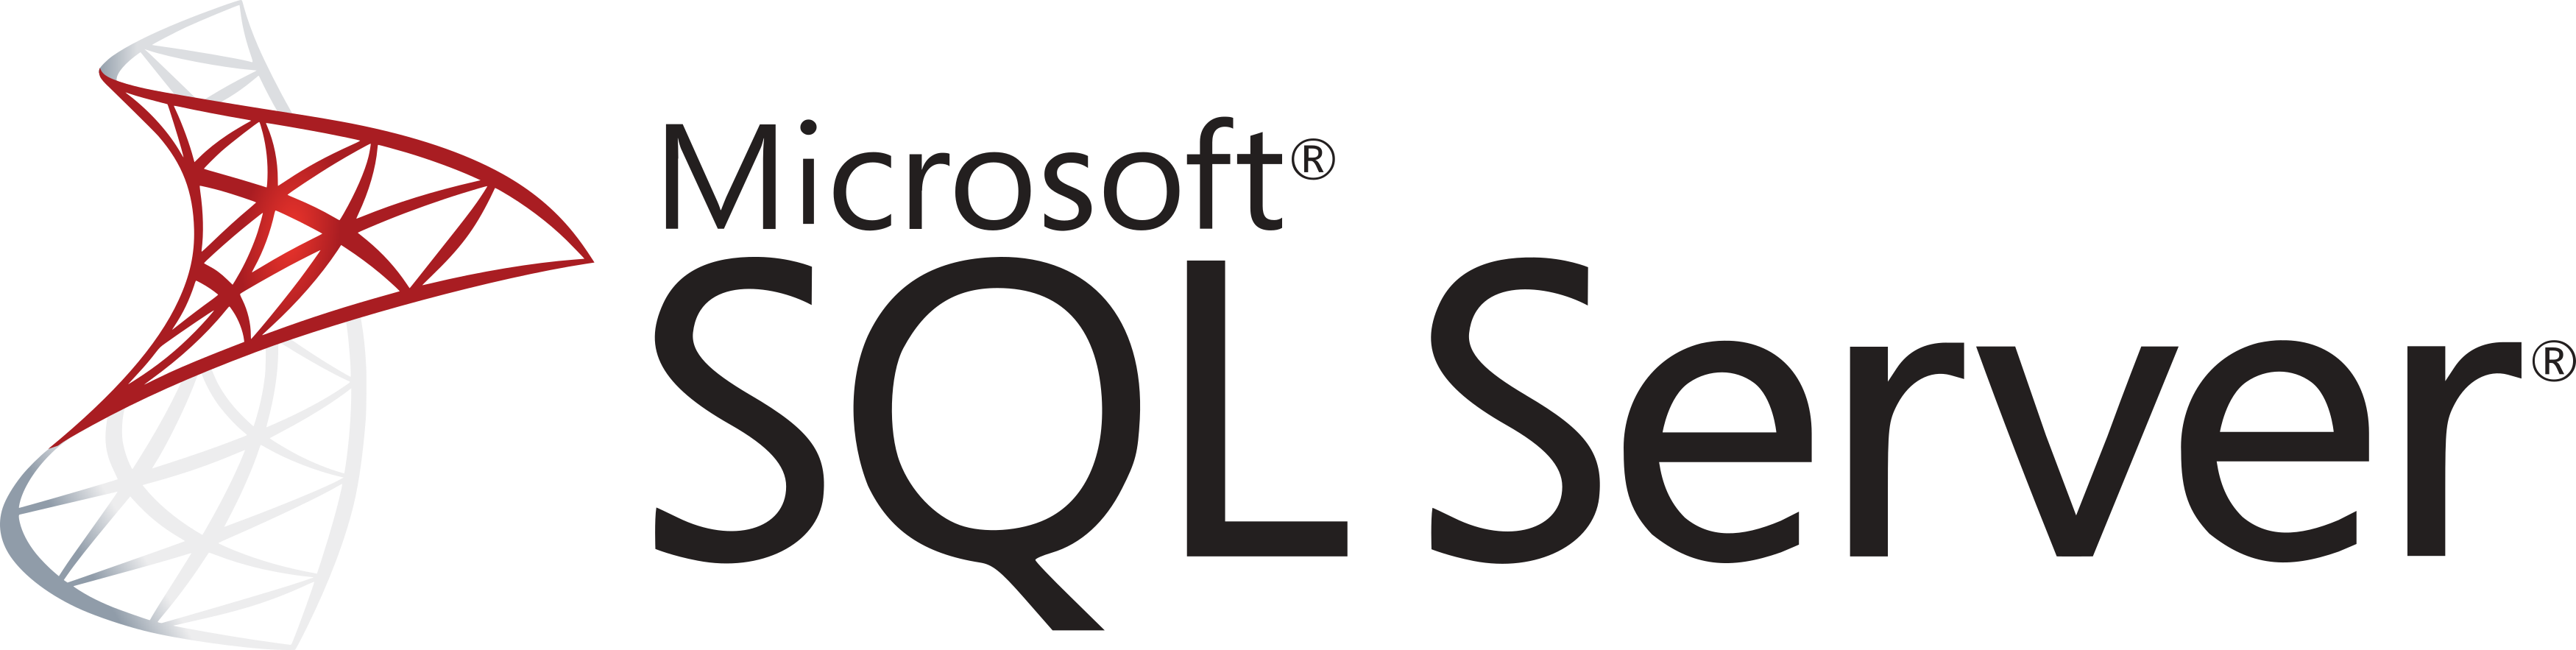 Microsoft sql server logo 01 3111976223